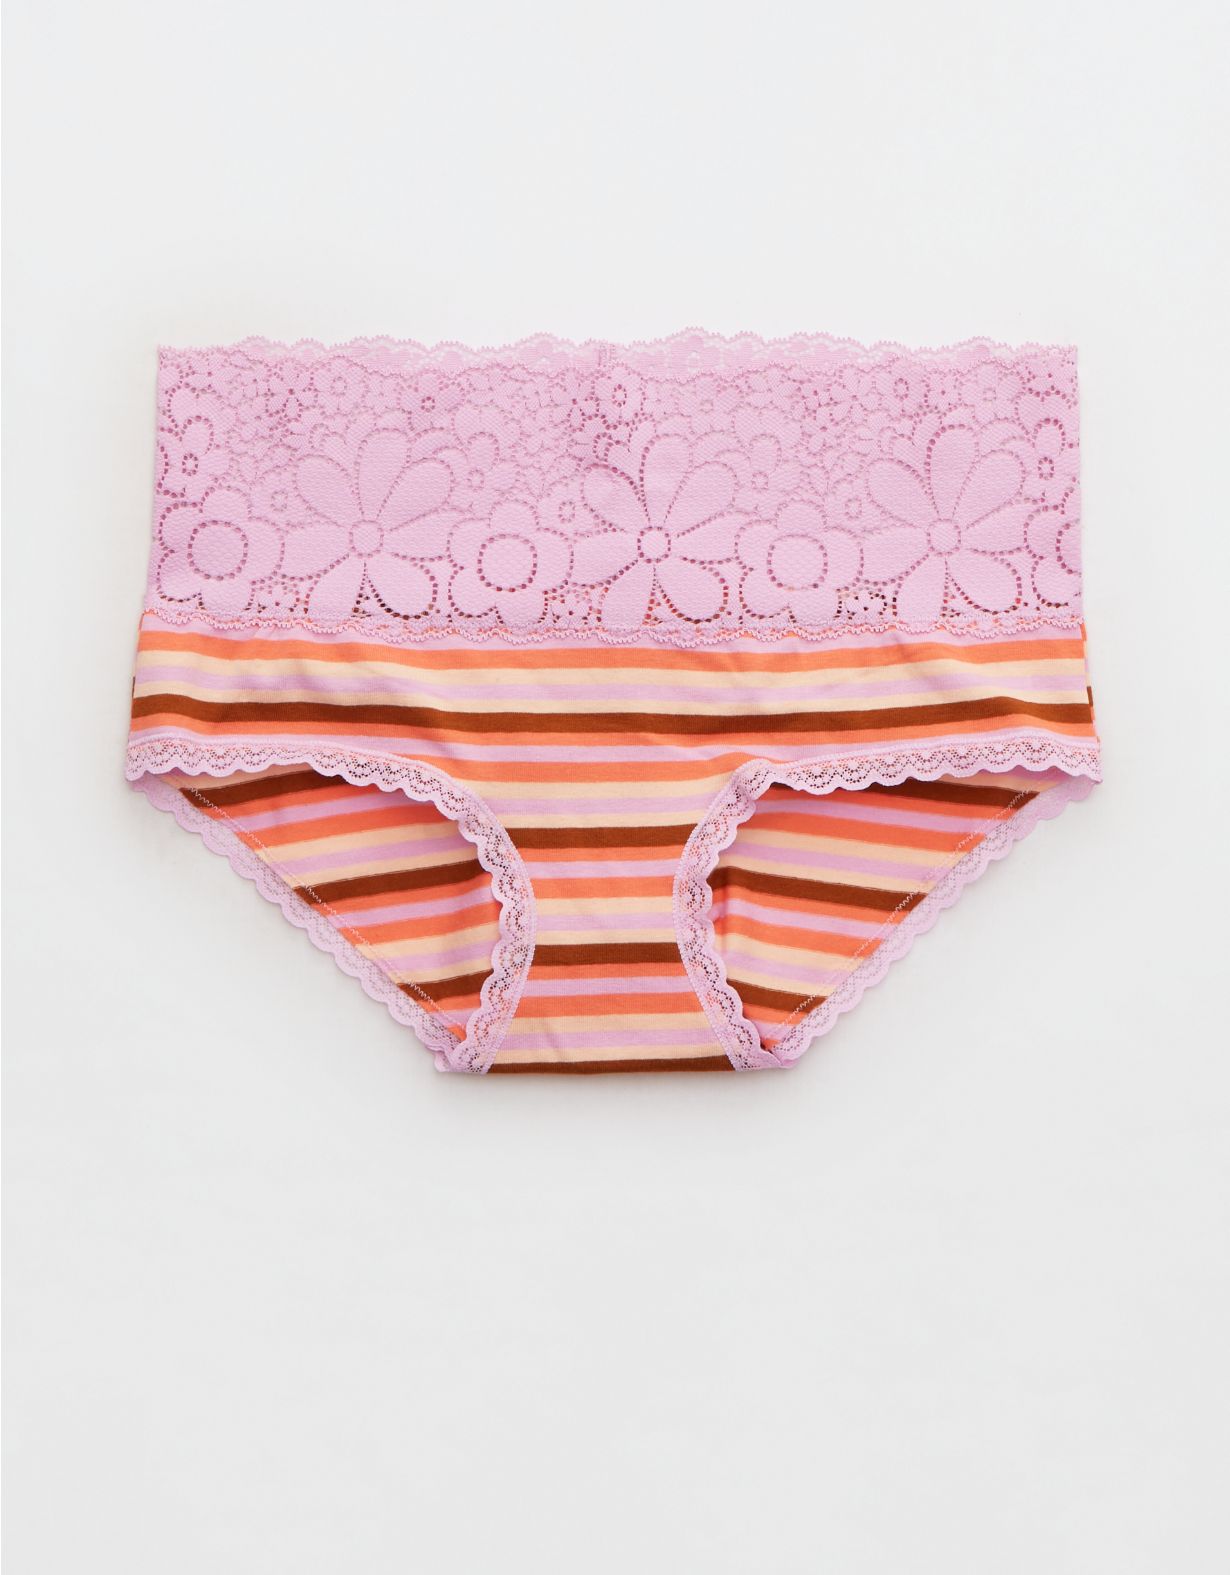 Aerie Candy Lace Cotton Boybrief Underwear